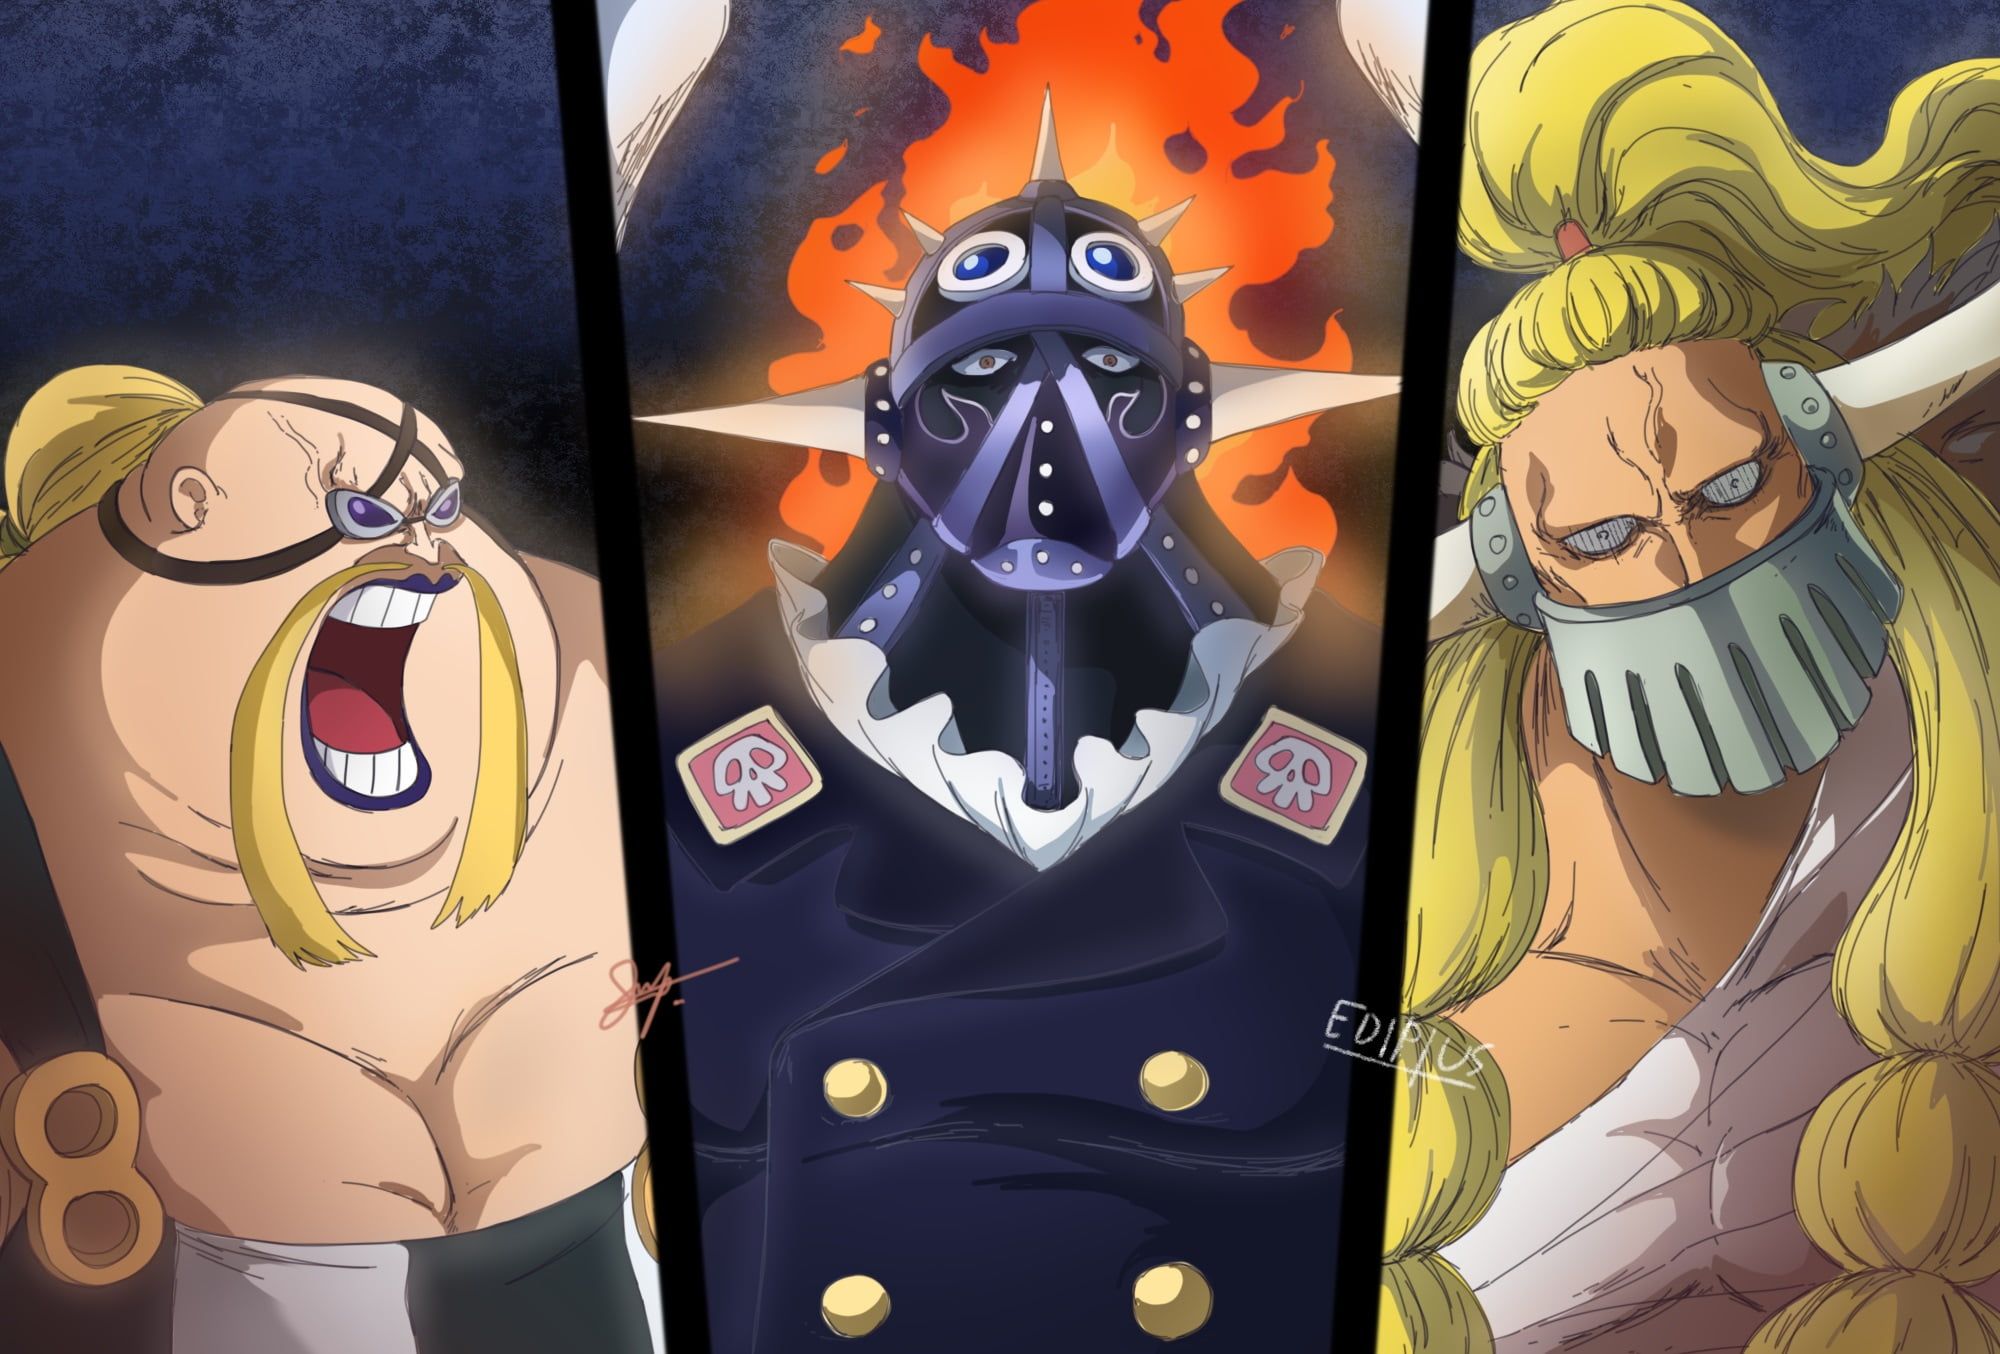 Nếu bạn yêu thích series One Piece, King là một nhân vật không thể bỏ qua! Hãy xem hình ảnh về King để khám phá thêm về anh chàng này trong thế giới hải tặc đầy màu sắc này.